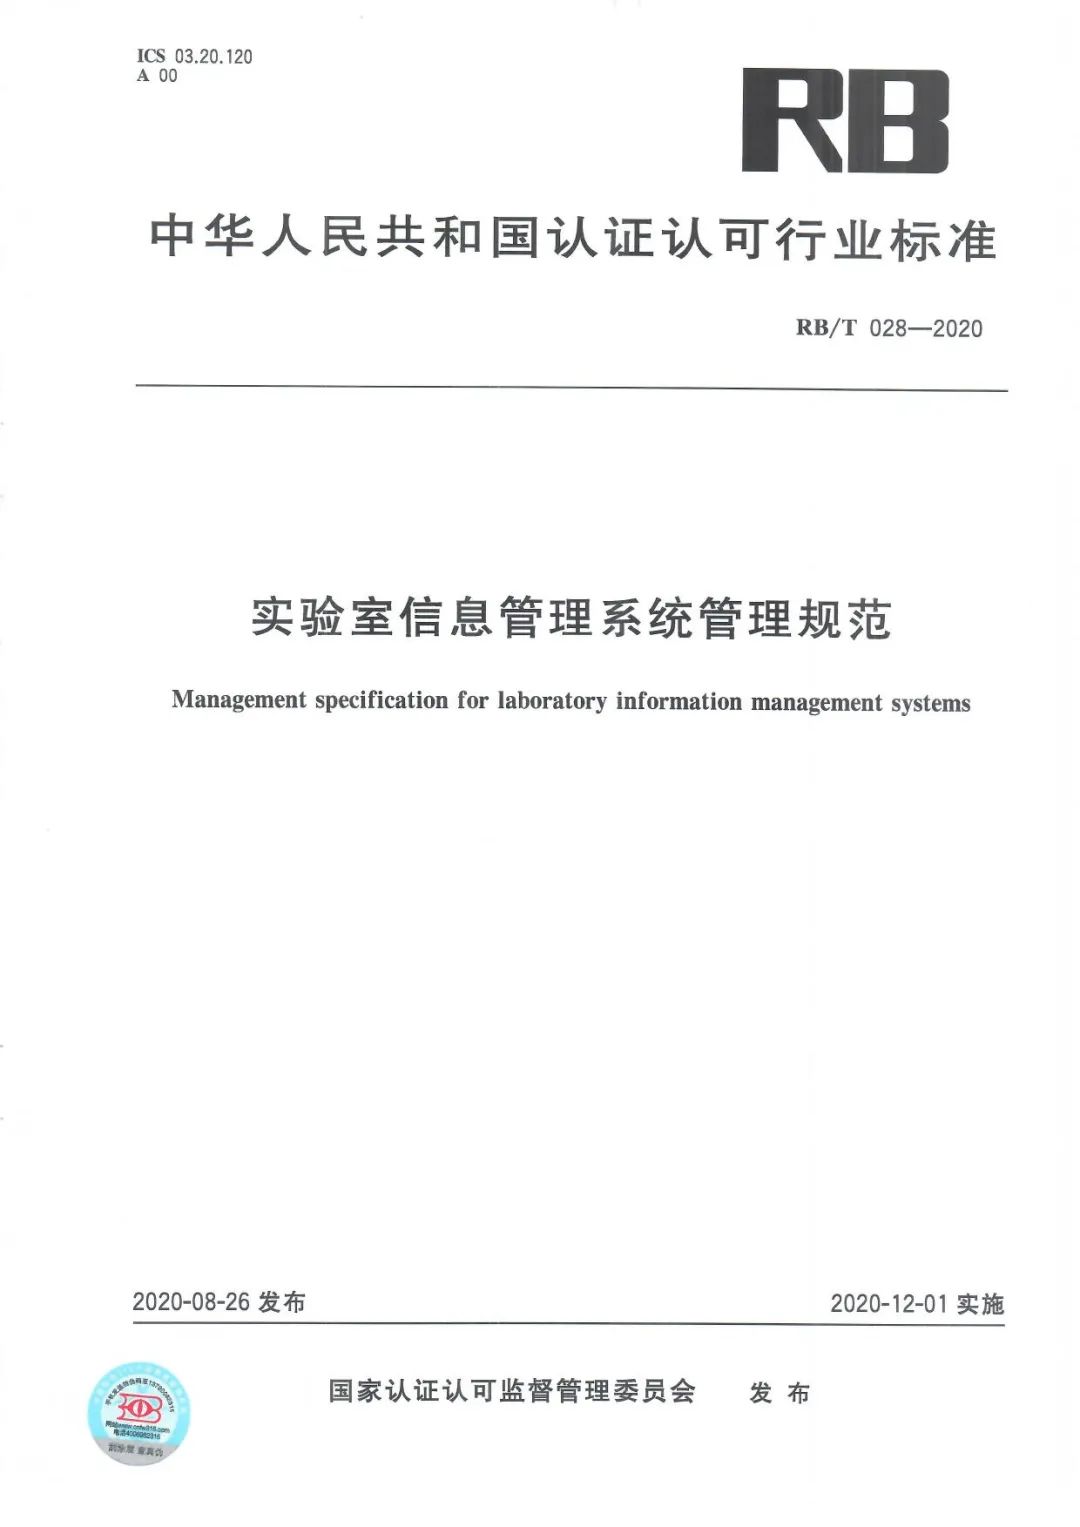 《实验室信息管理系统管理规范》RB/T 028-2020